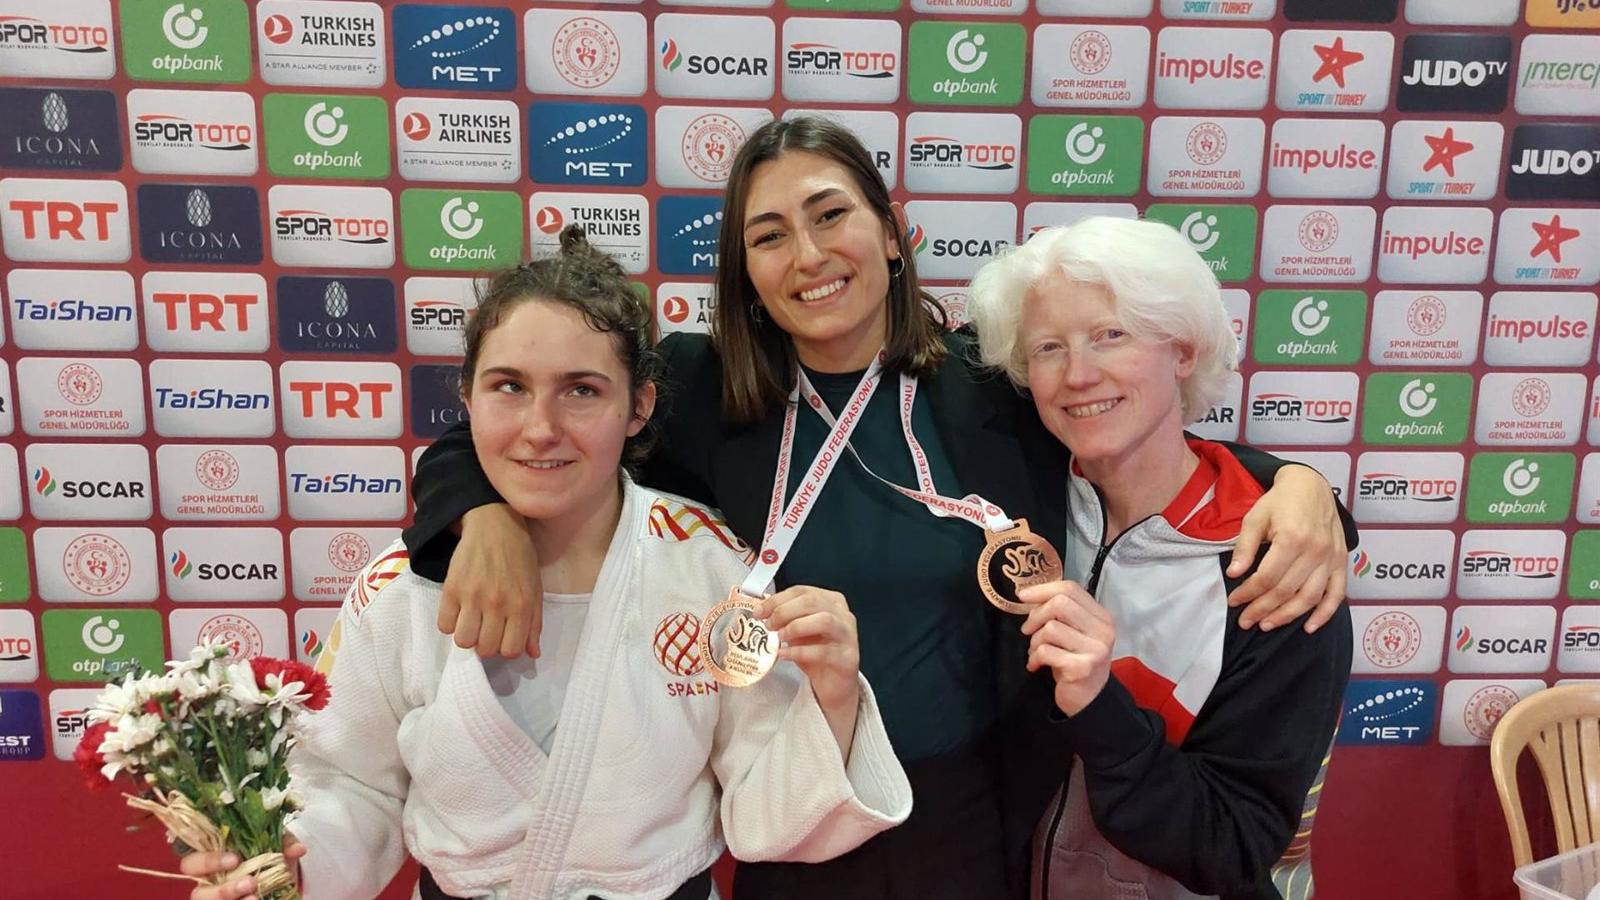 Judo.- Los judocas Ibáñez, Arce y Manzanero suman en Antalya éxitos y puntos valiosos para los Juegos Paralímpicos